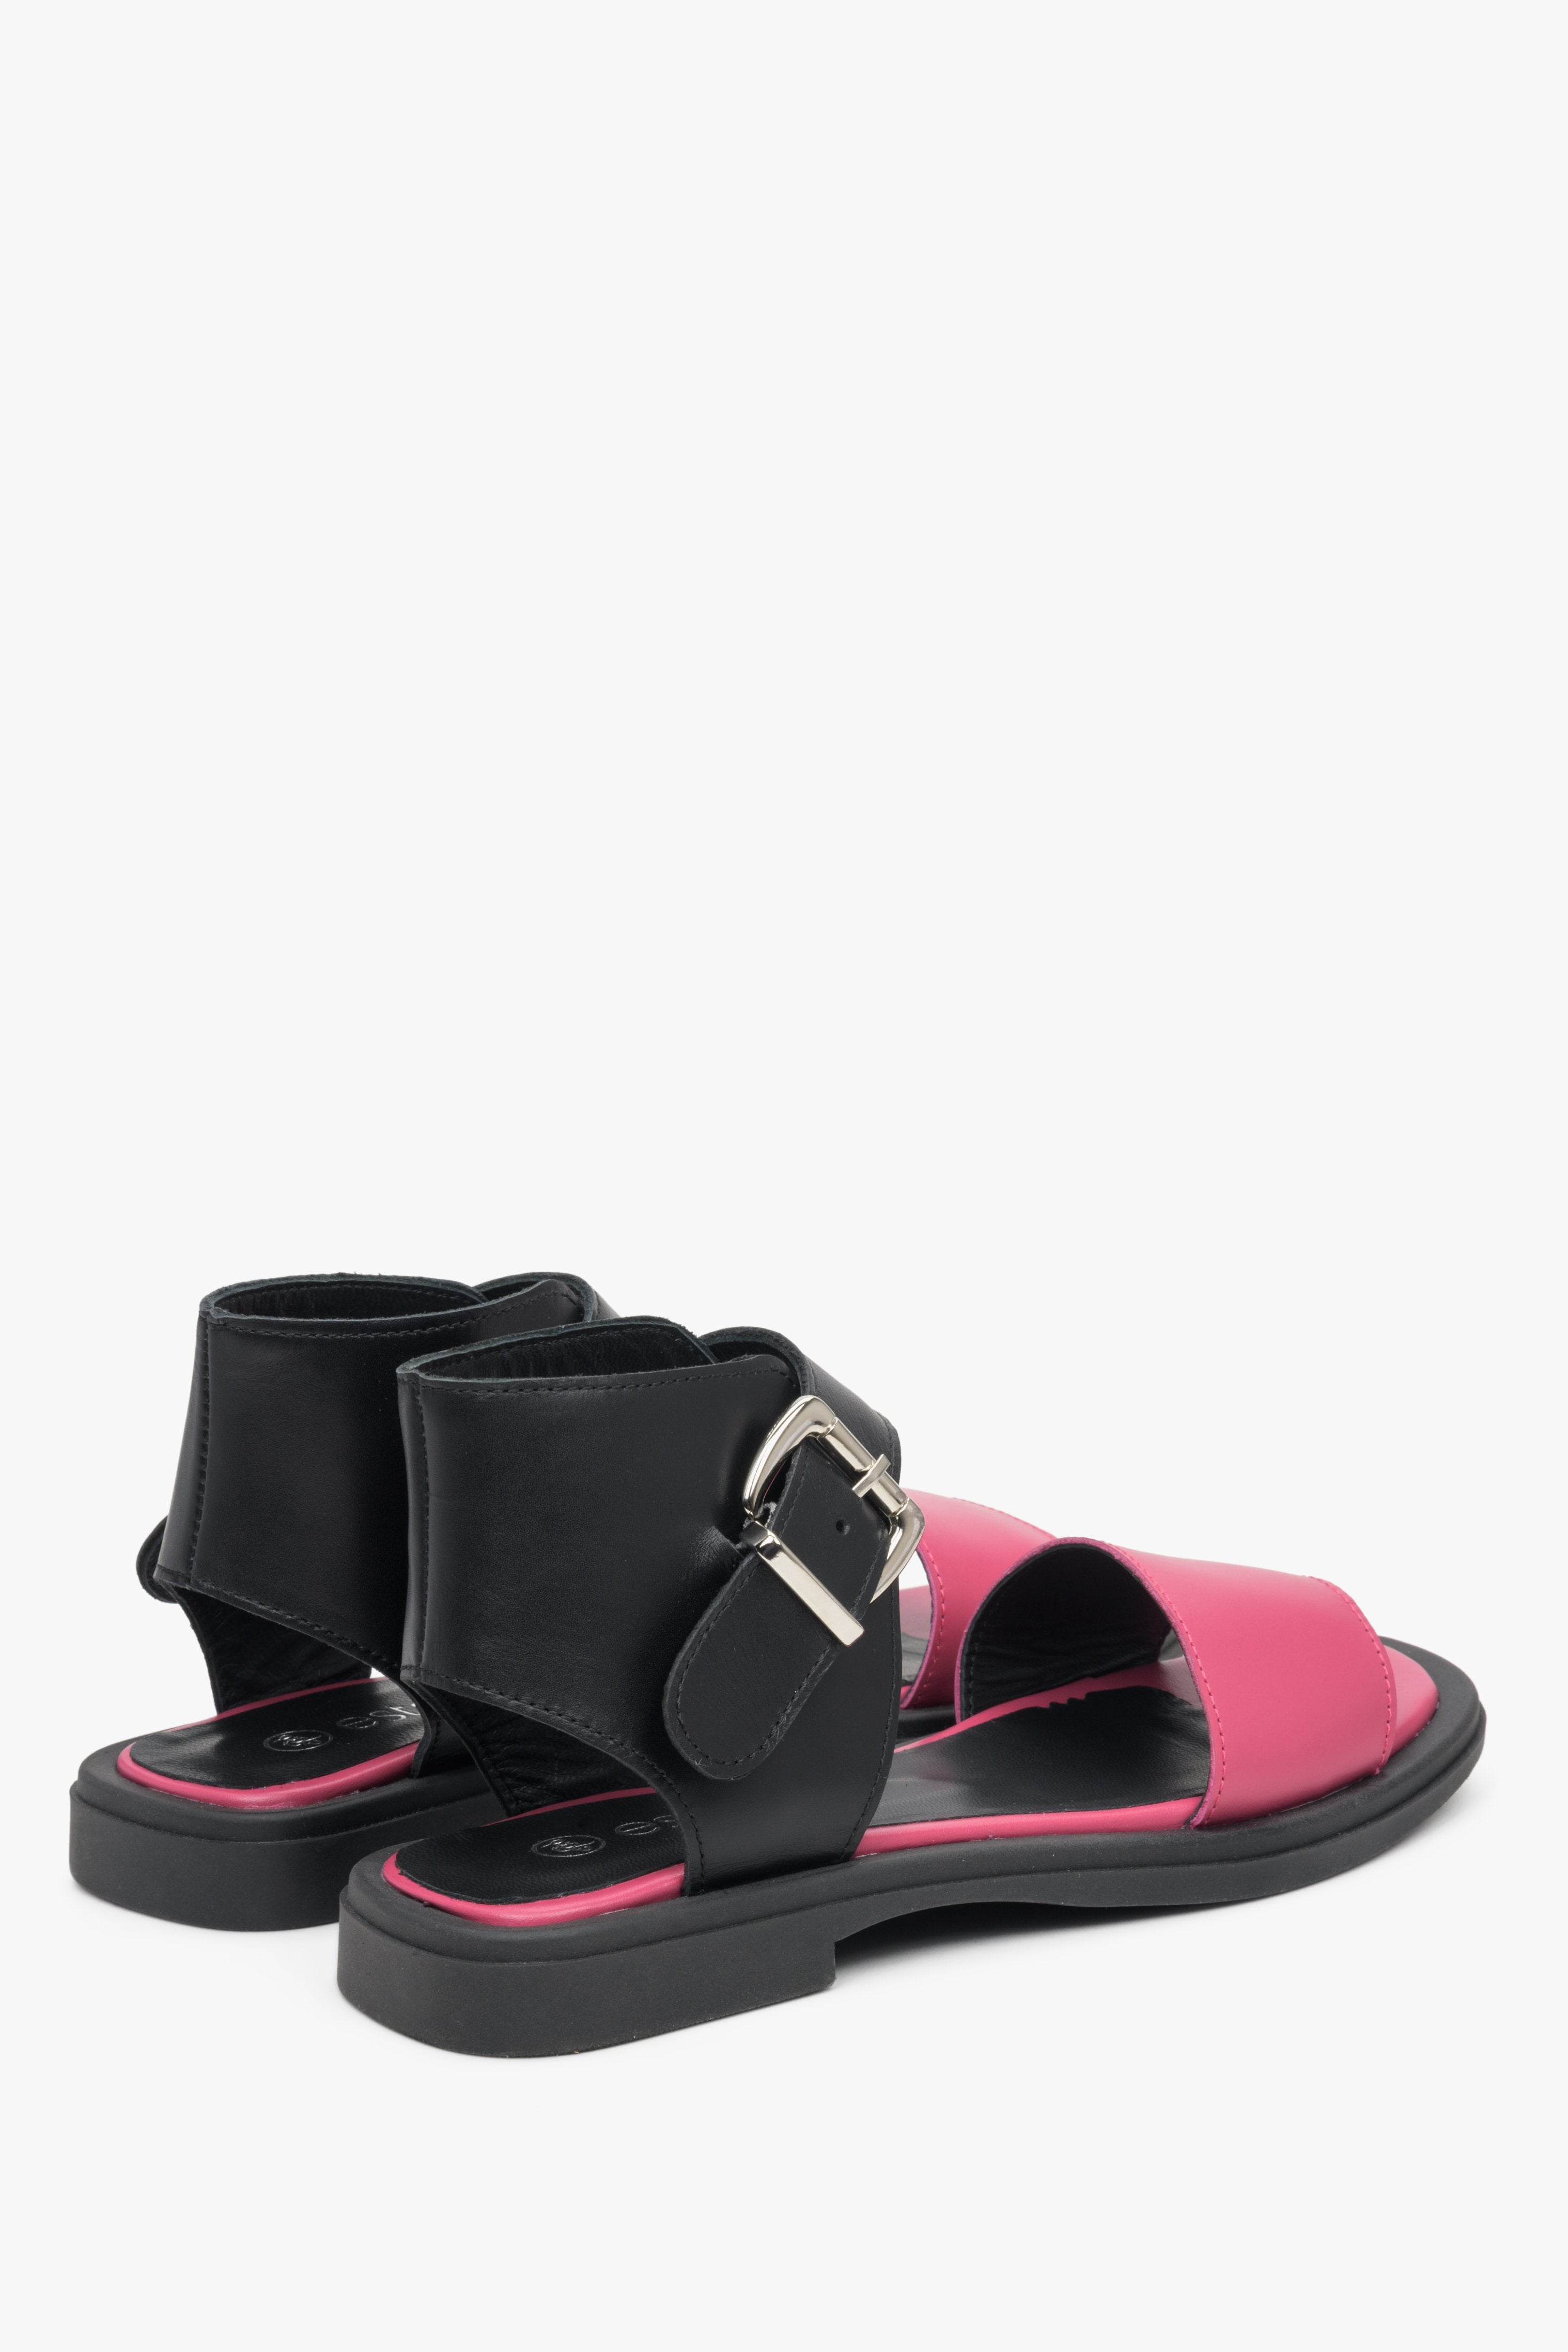 Sandały damskie skórzane w kolorze różowo-czarnym Estro: prezentacja linii zapiętka i boku obuwia.